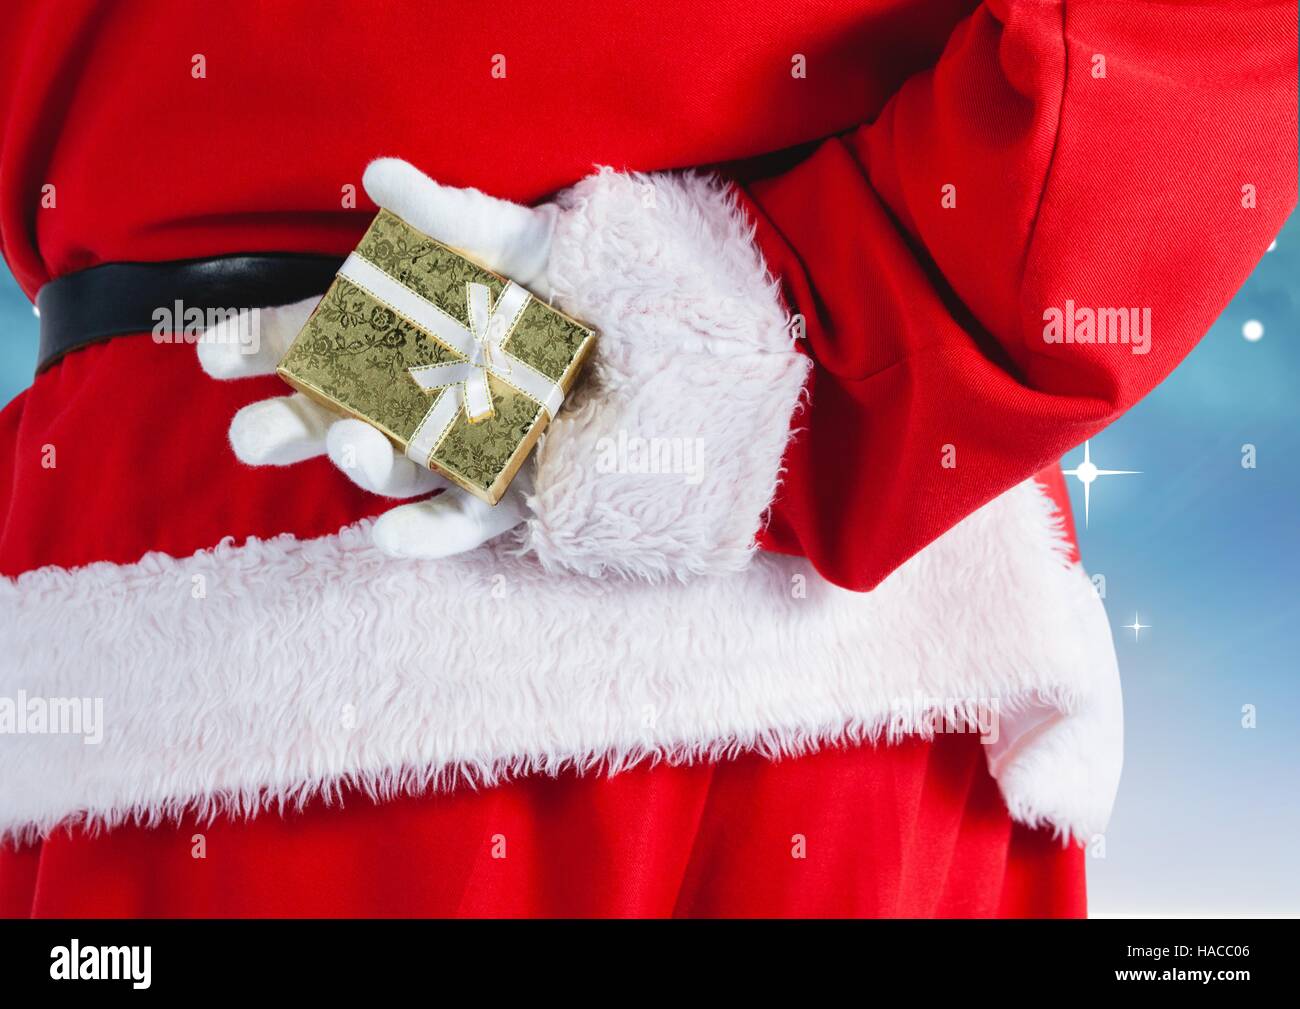 Santa claus hiding gift behind his back Stock Photo